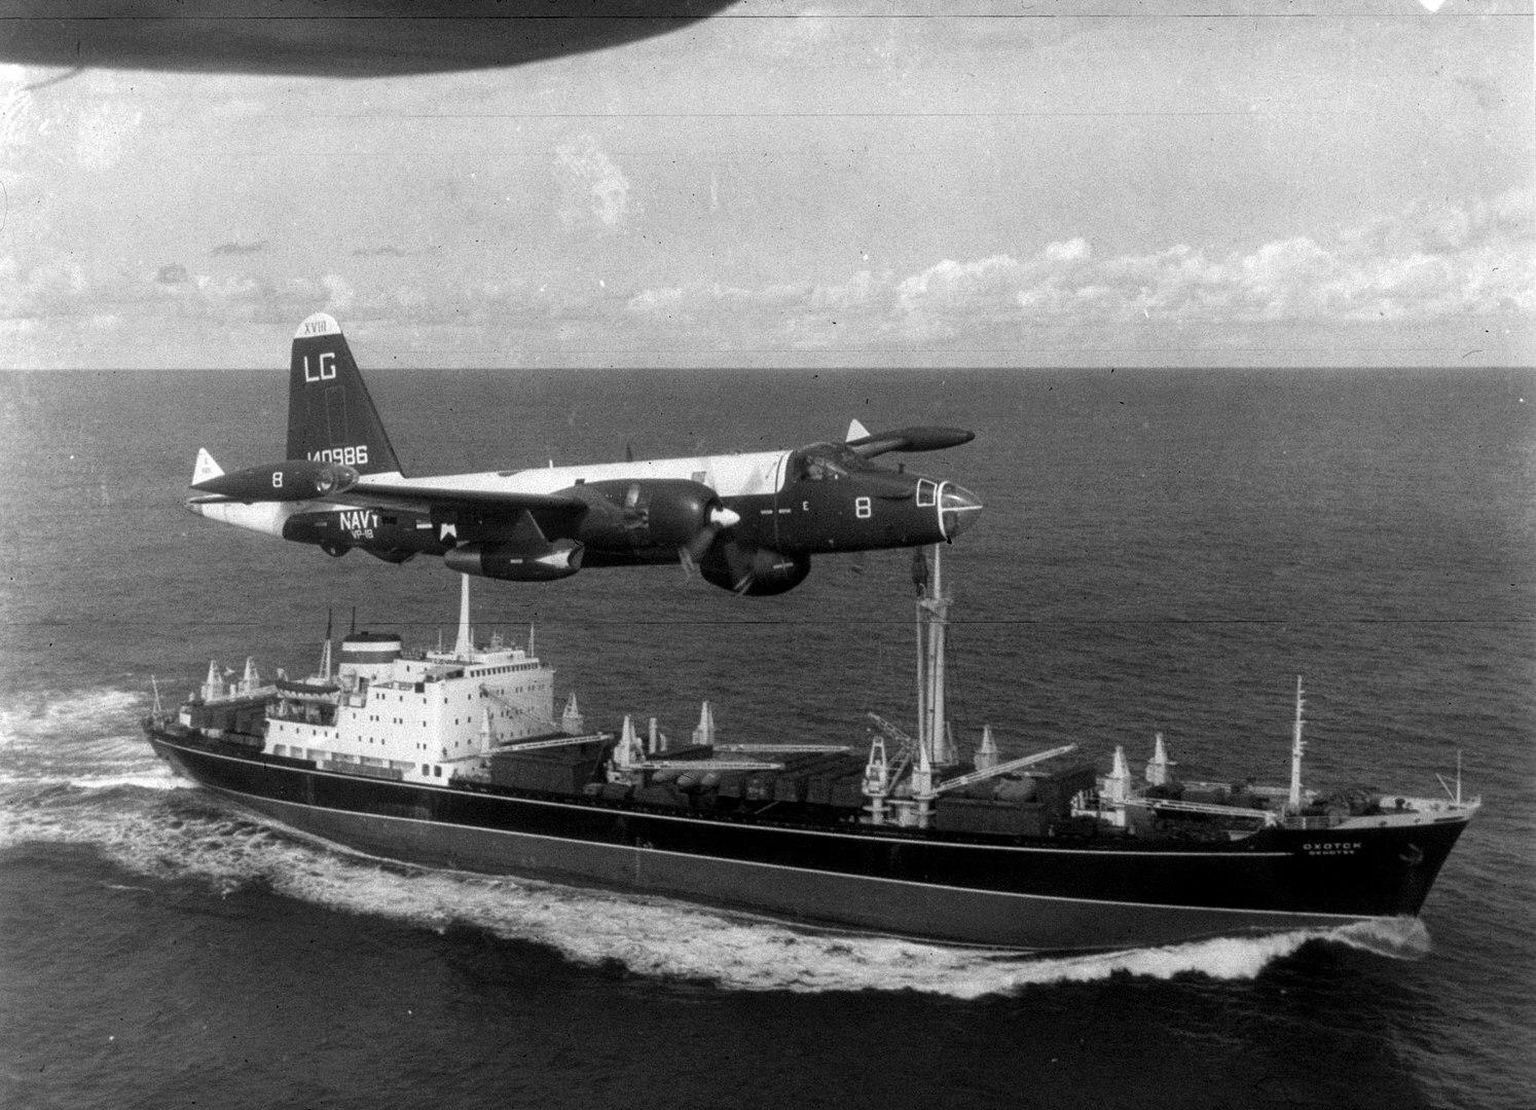 Ameerika Ühendriikide mereväe lennuk Lockheed SP-2H Neptune lendamas üle Nõukogude liidu kaubalaeva Ohhotsk. Pilt on tehtud 1962. aasta detsembris, kui Nõukogude Liit Kuubale toimetatud sõjatehnikat minema viis.